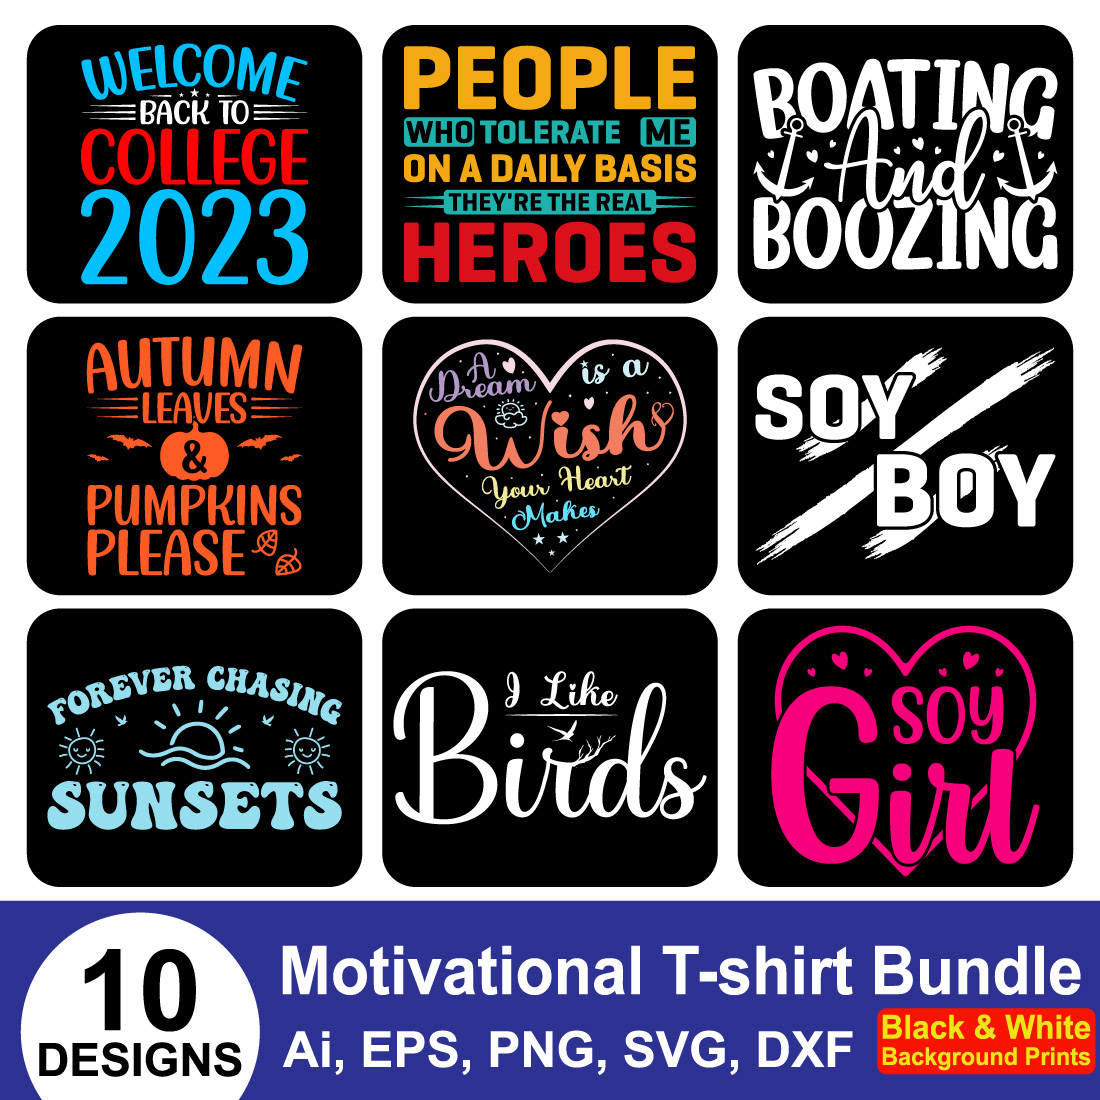 Minimalist Motivational T-shirt Design Bundle main cover.